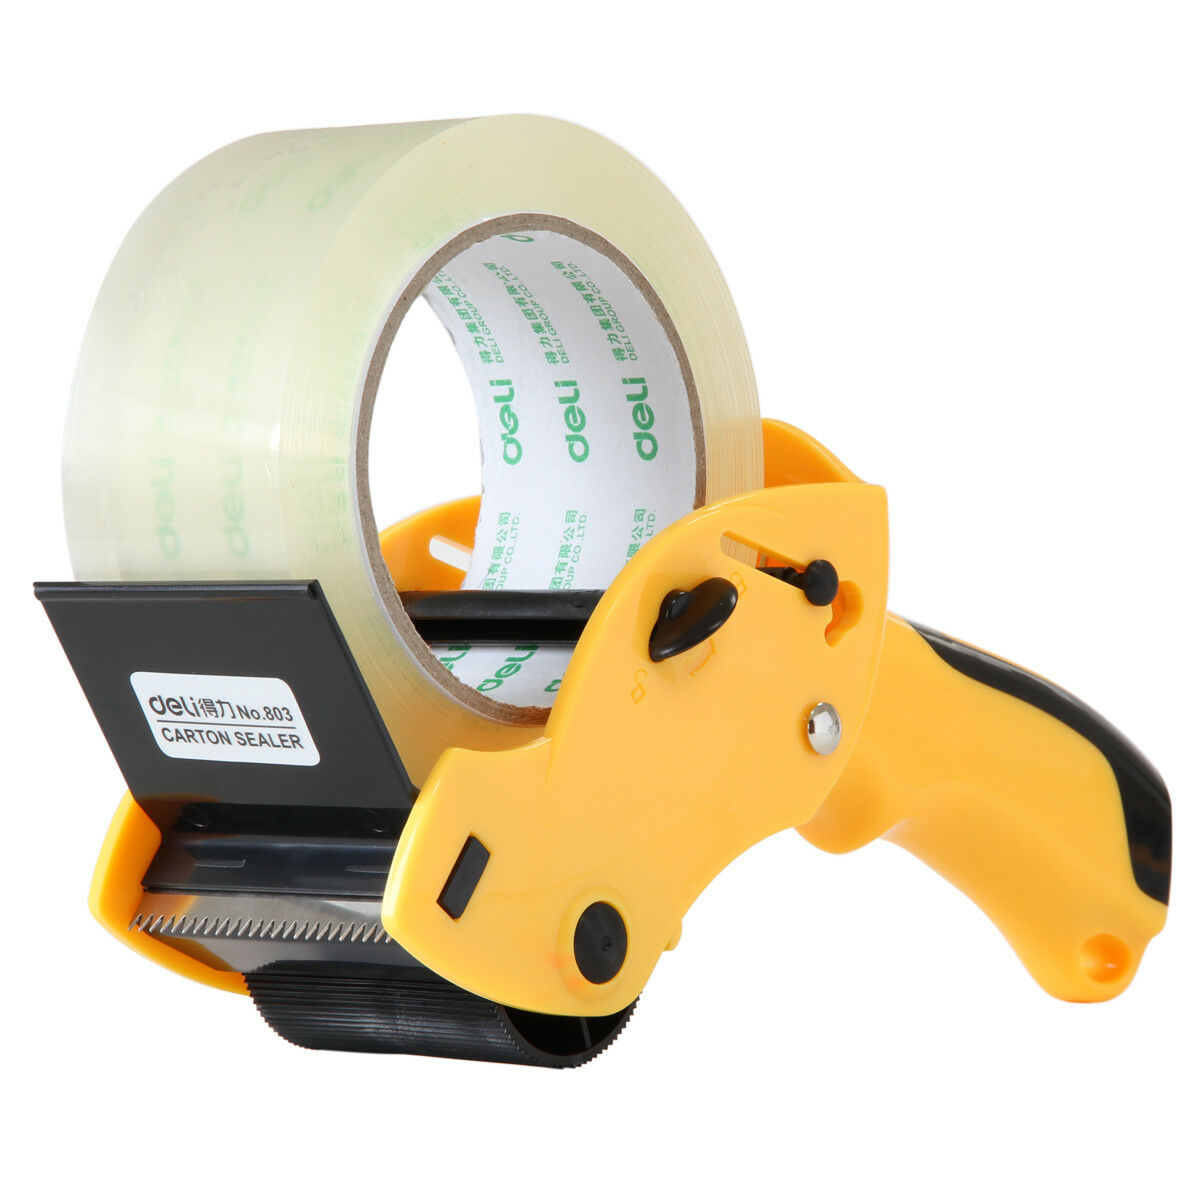 sealing tape holder cutter manual packing machine tape dispenser carton sealer